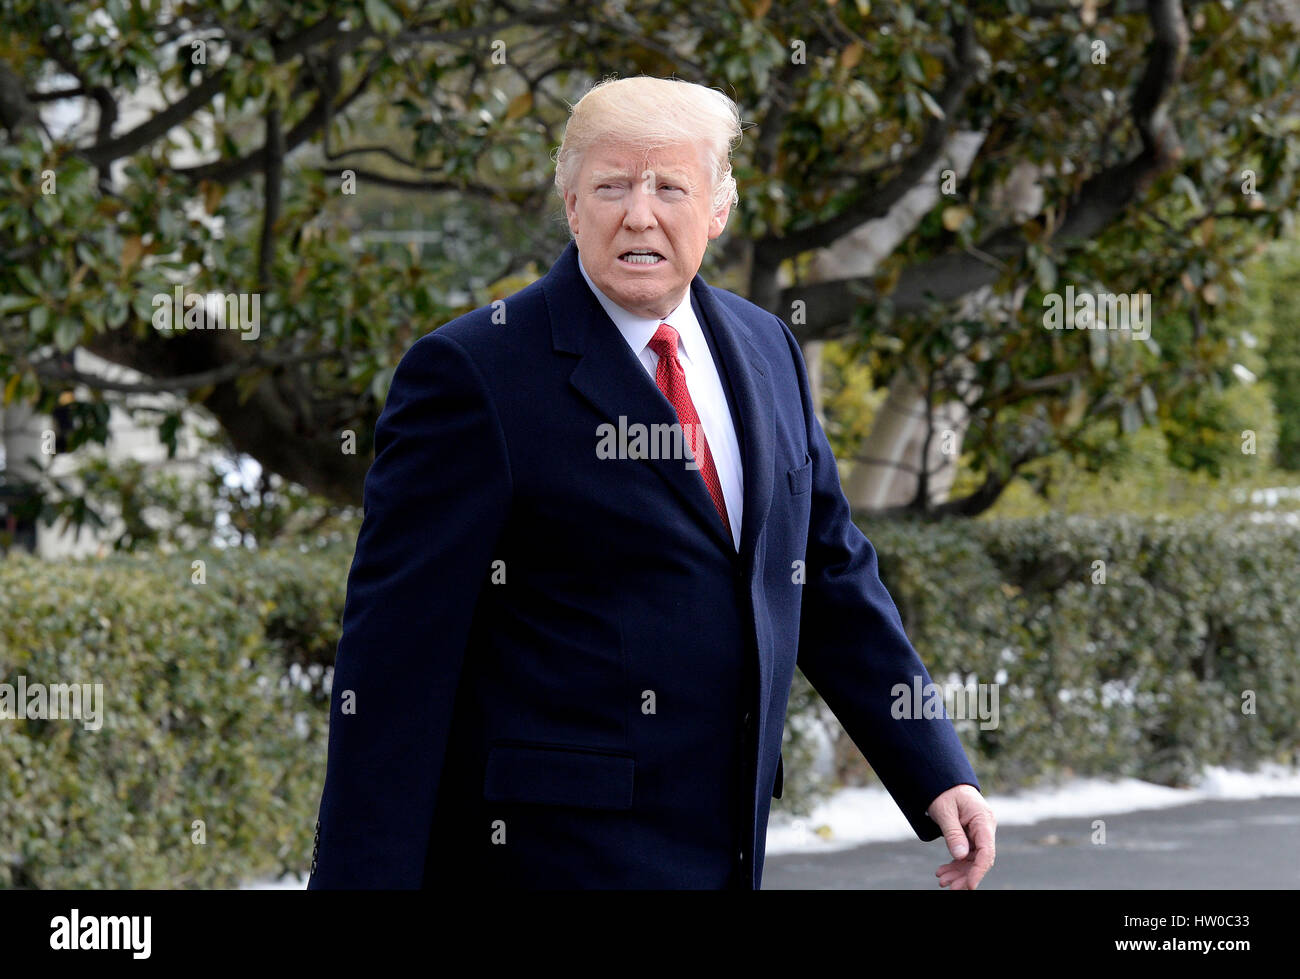 Washington DC, USA 15. März 2017 Vereinigte Staaten Präsident Donald J Trump Wanderungen auf dem South Lawn des weißen Hauses in Richtung Marine One wie er verlässt das Weiße Haus am 15. März 2017 in Washington, DC, der Präsident wird Veranstaltungen in Michigan und Tenne Stockfoto